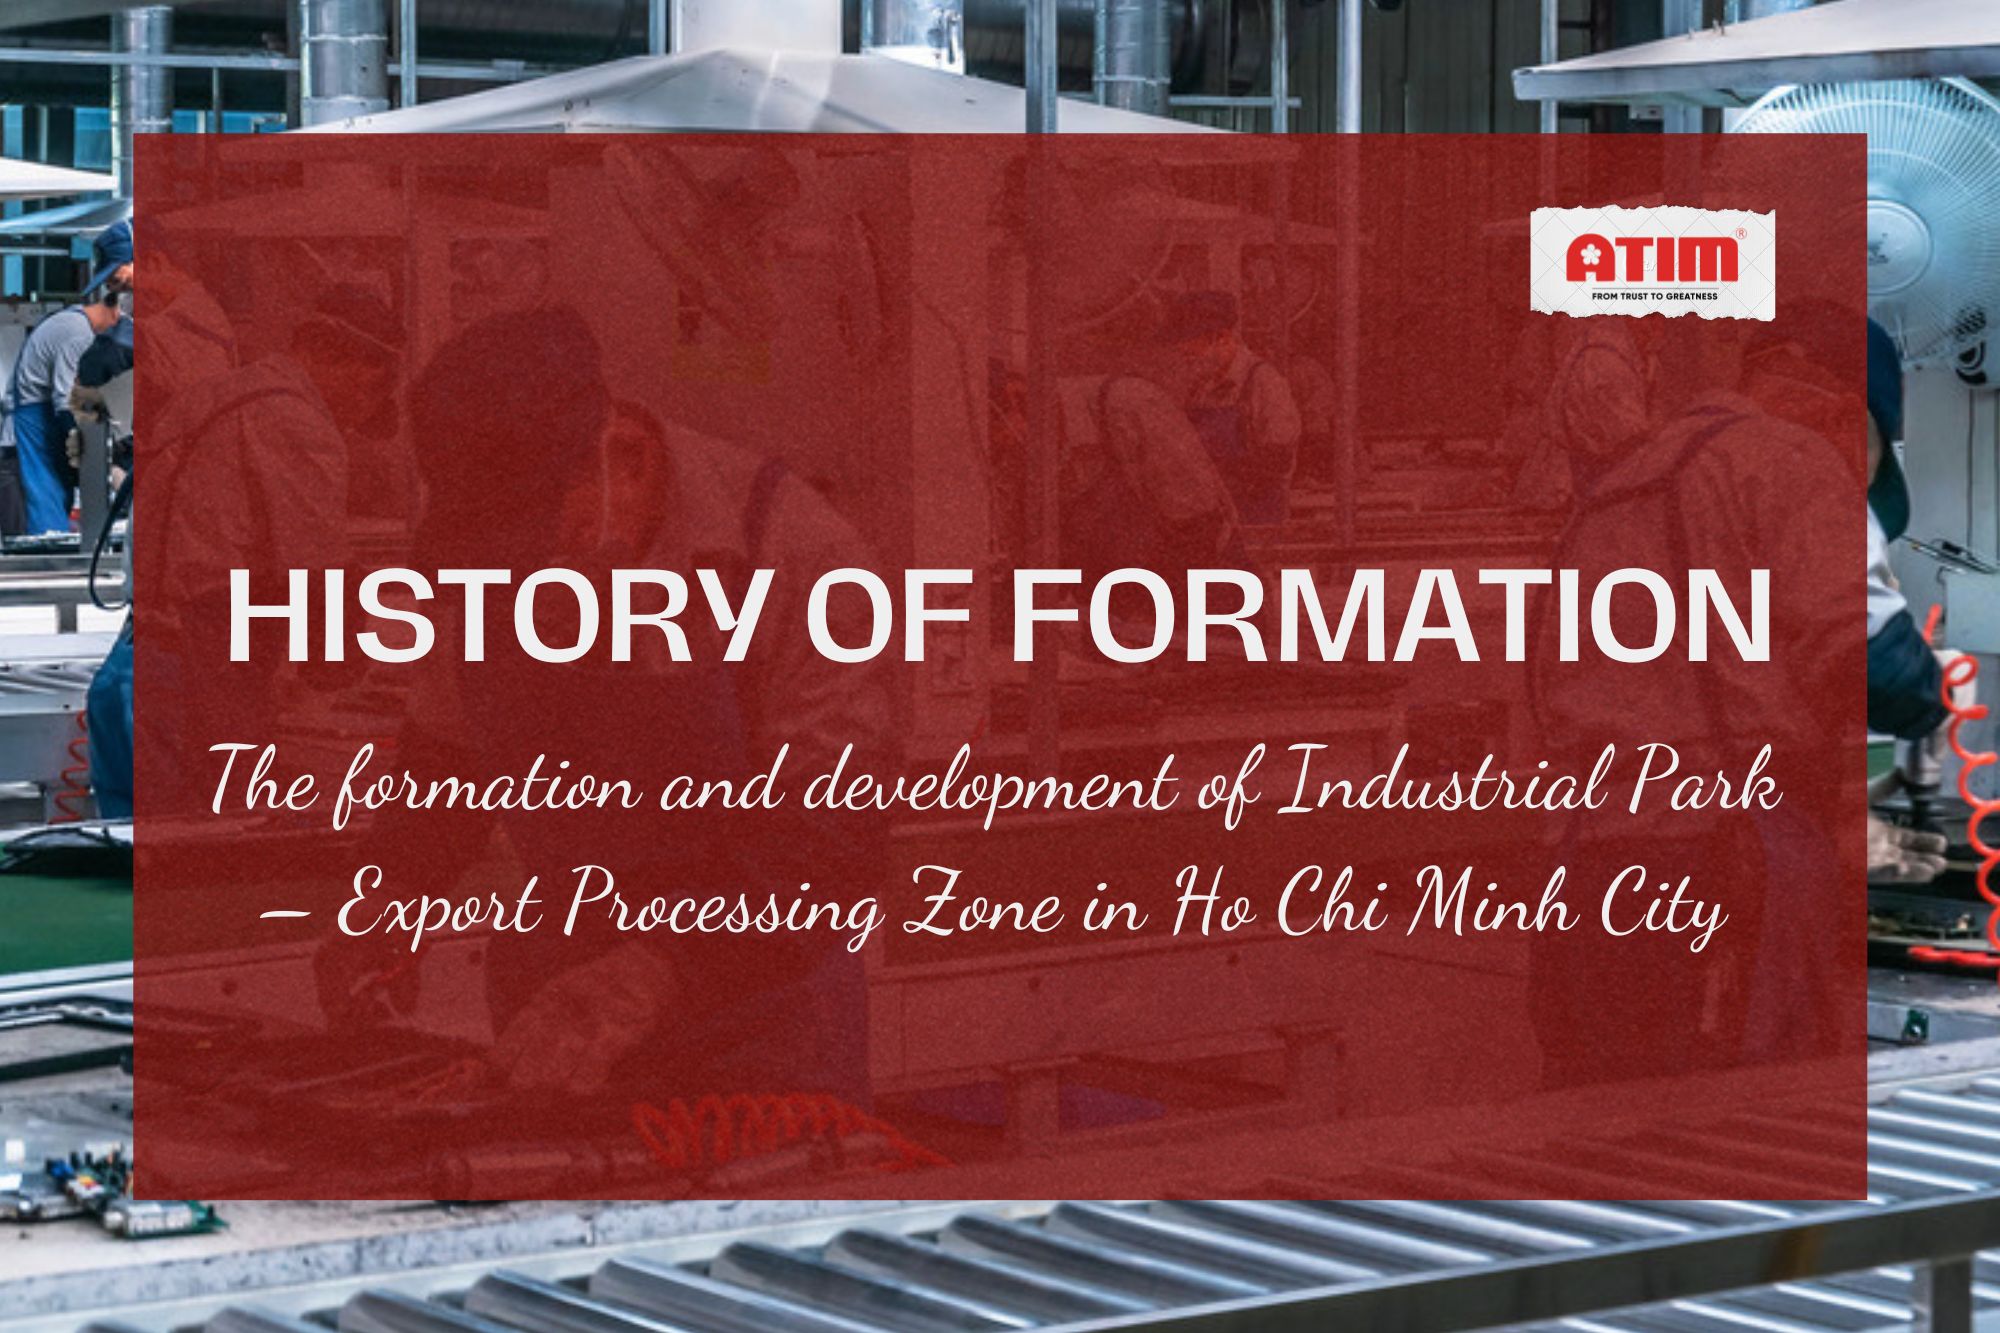 Lịch sử hình thành các khu công nghiệp – khu chế xuất tại TP. Hồ Chí Minh